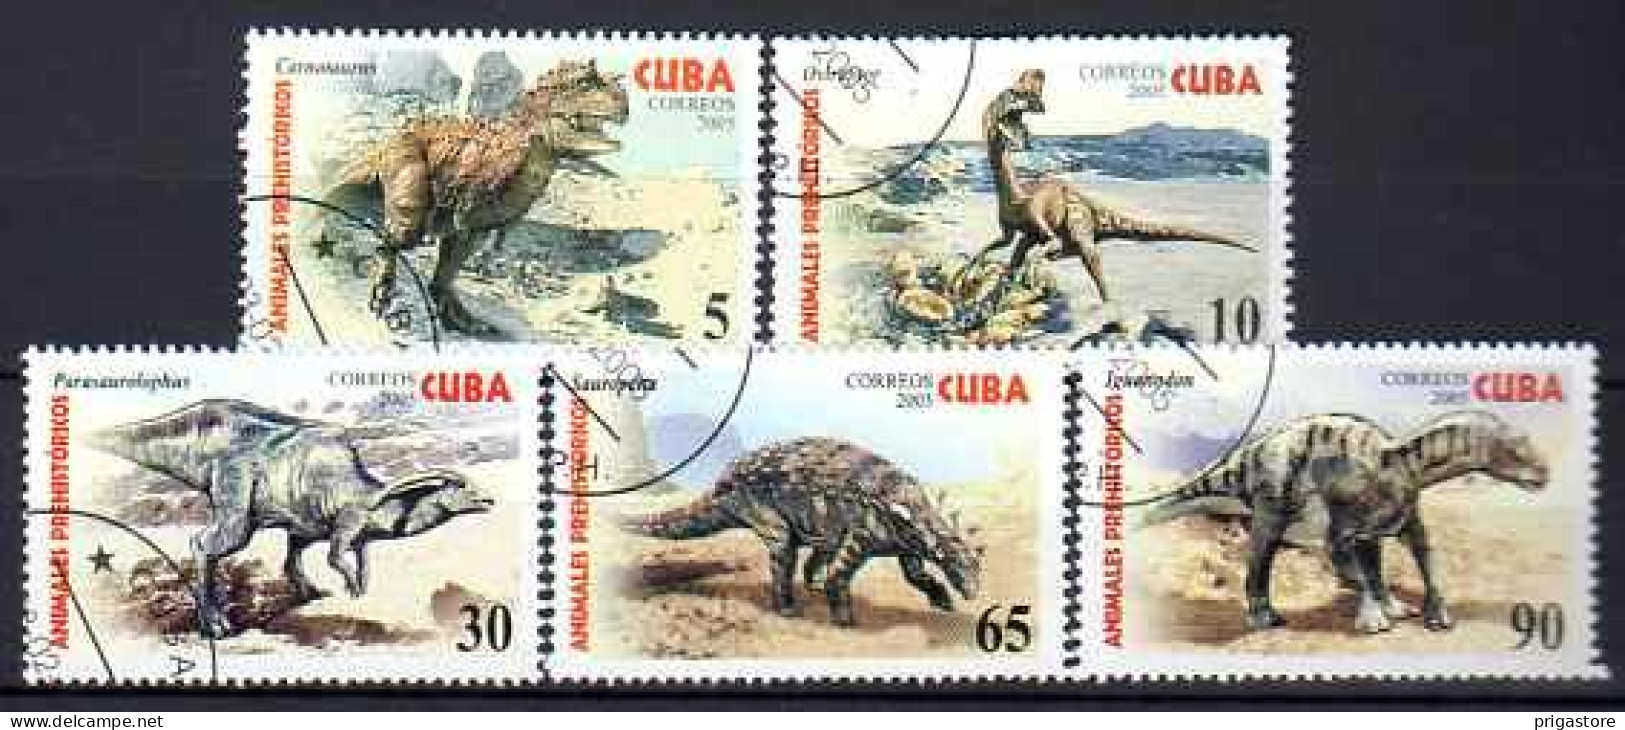 Cuba 2005 Animaux Préhistoriques (10) Yvert N° 4225 à 4229 Oblitéré Used - Usati